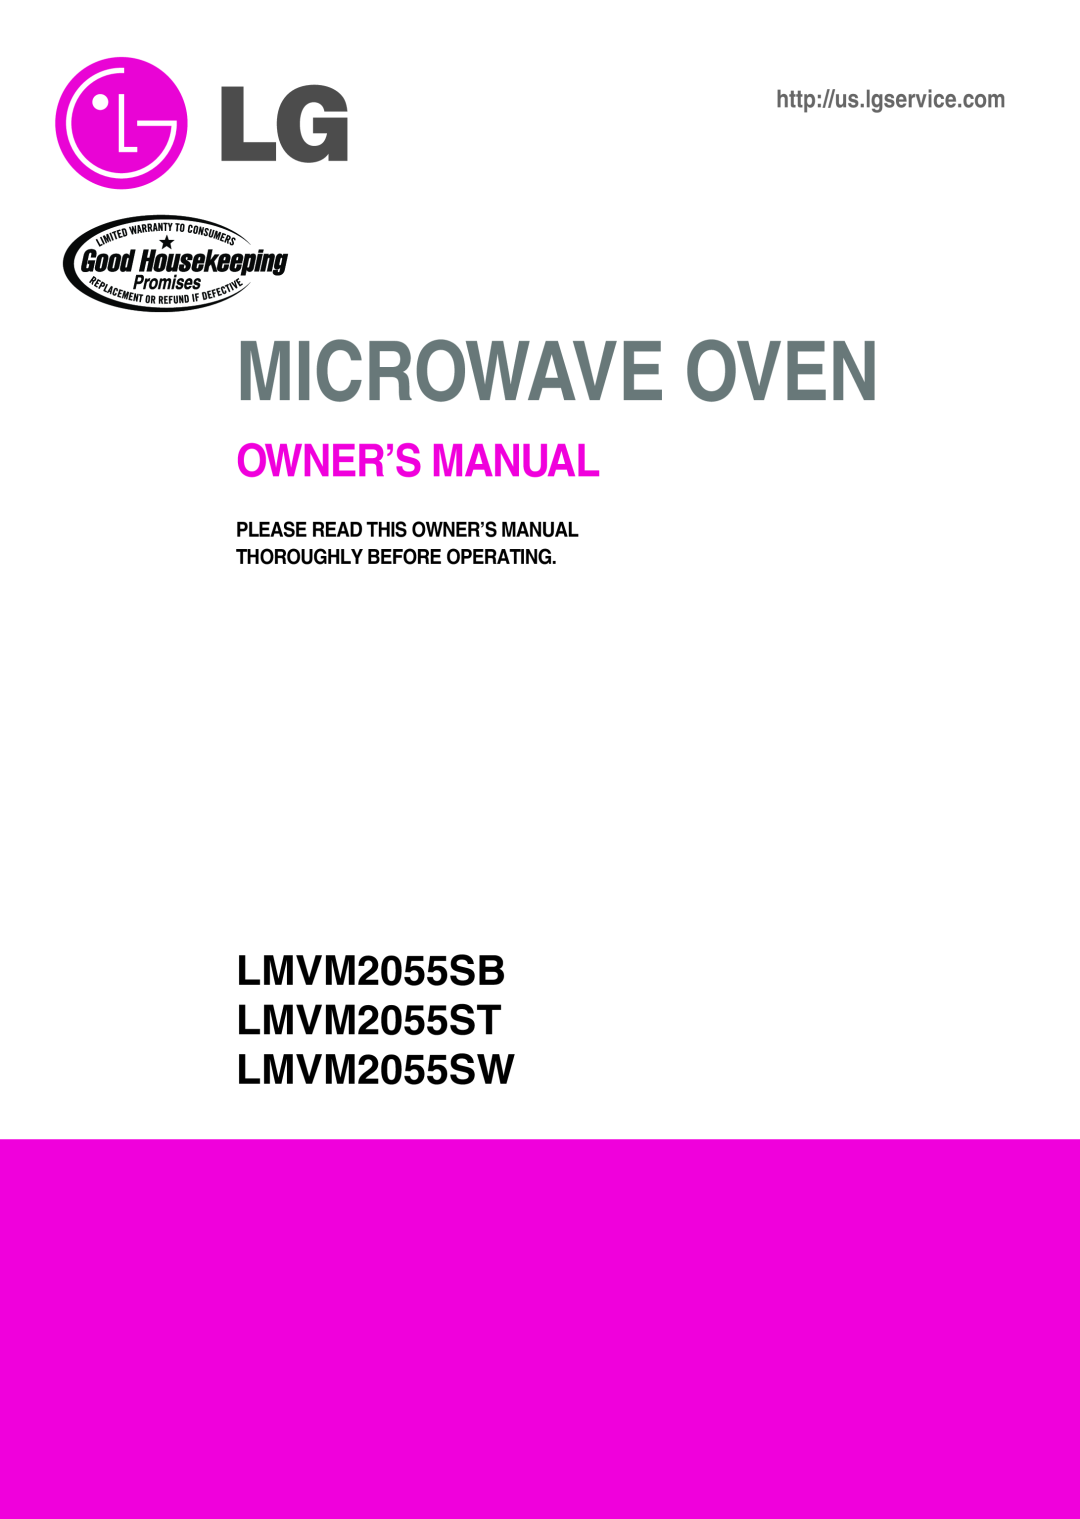 LG Electronics owner manual LMVM2055SB LMVM2055ST LMVM2055SW, Microwave Oven 